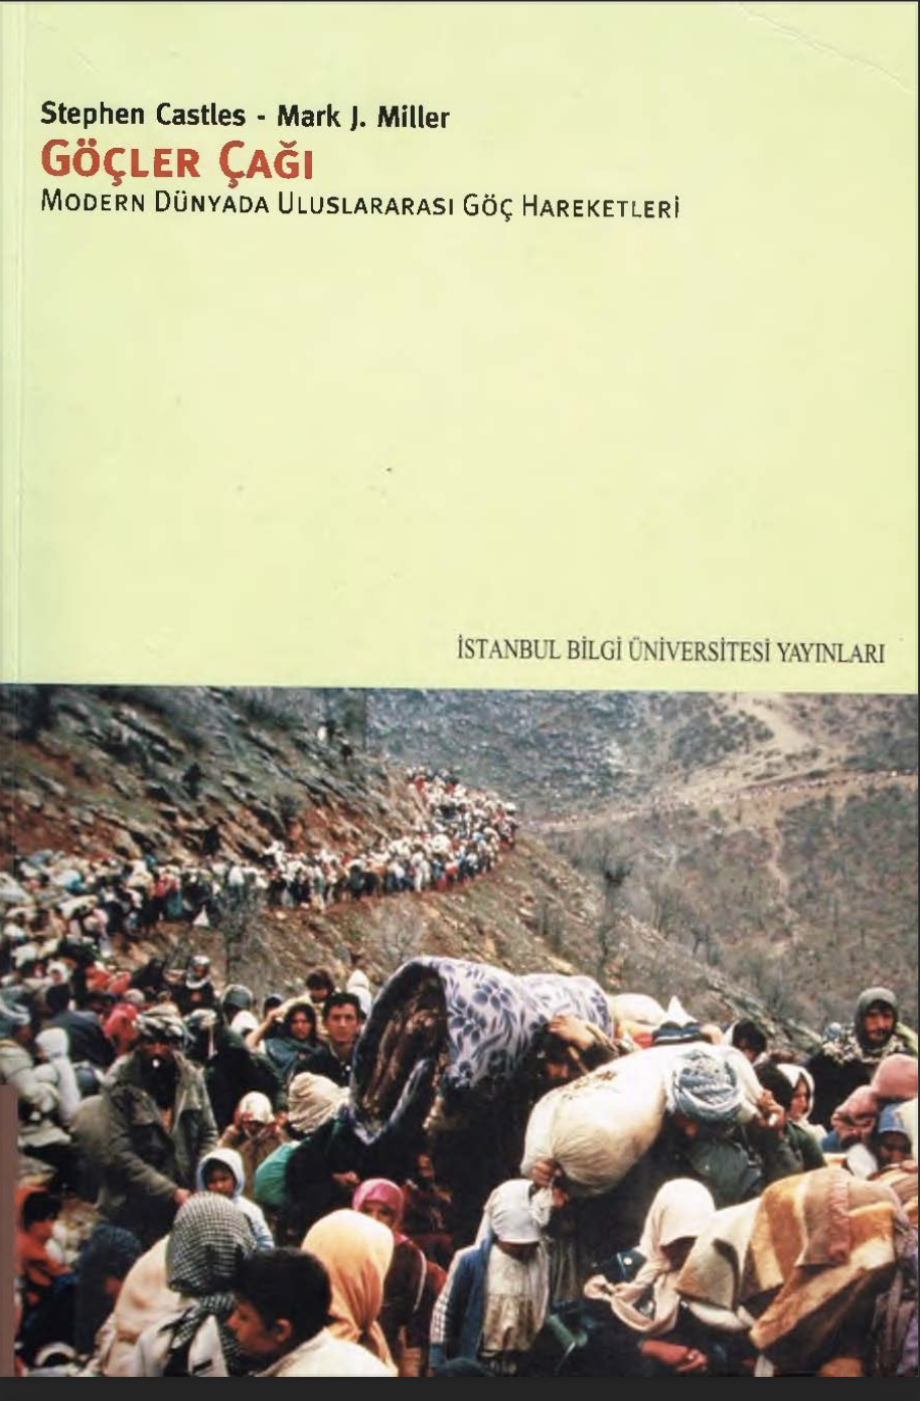 Kitap kapağı görüntüsü : Kapak fotoğrafı: Coşkun Aral Saddam Hüseyin’in Kuzey Irak’ı bombalamasından sonra sınırdan Türkiye’ye geçen Kürtler (Mart 1991)